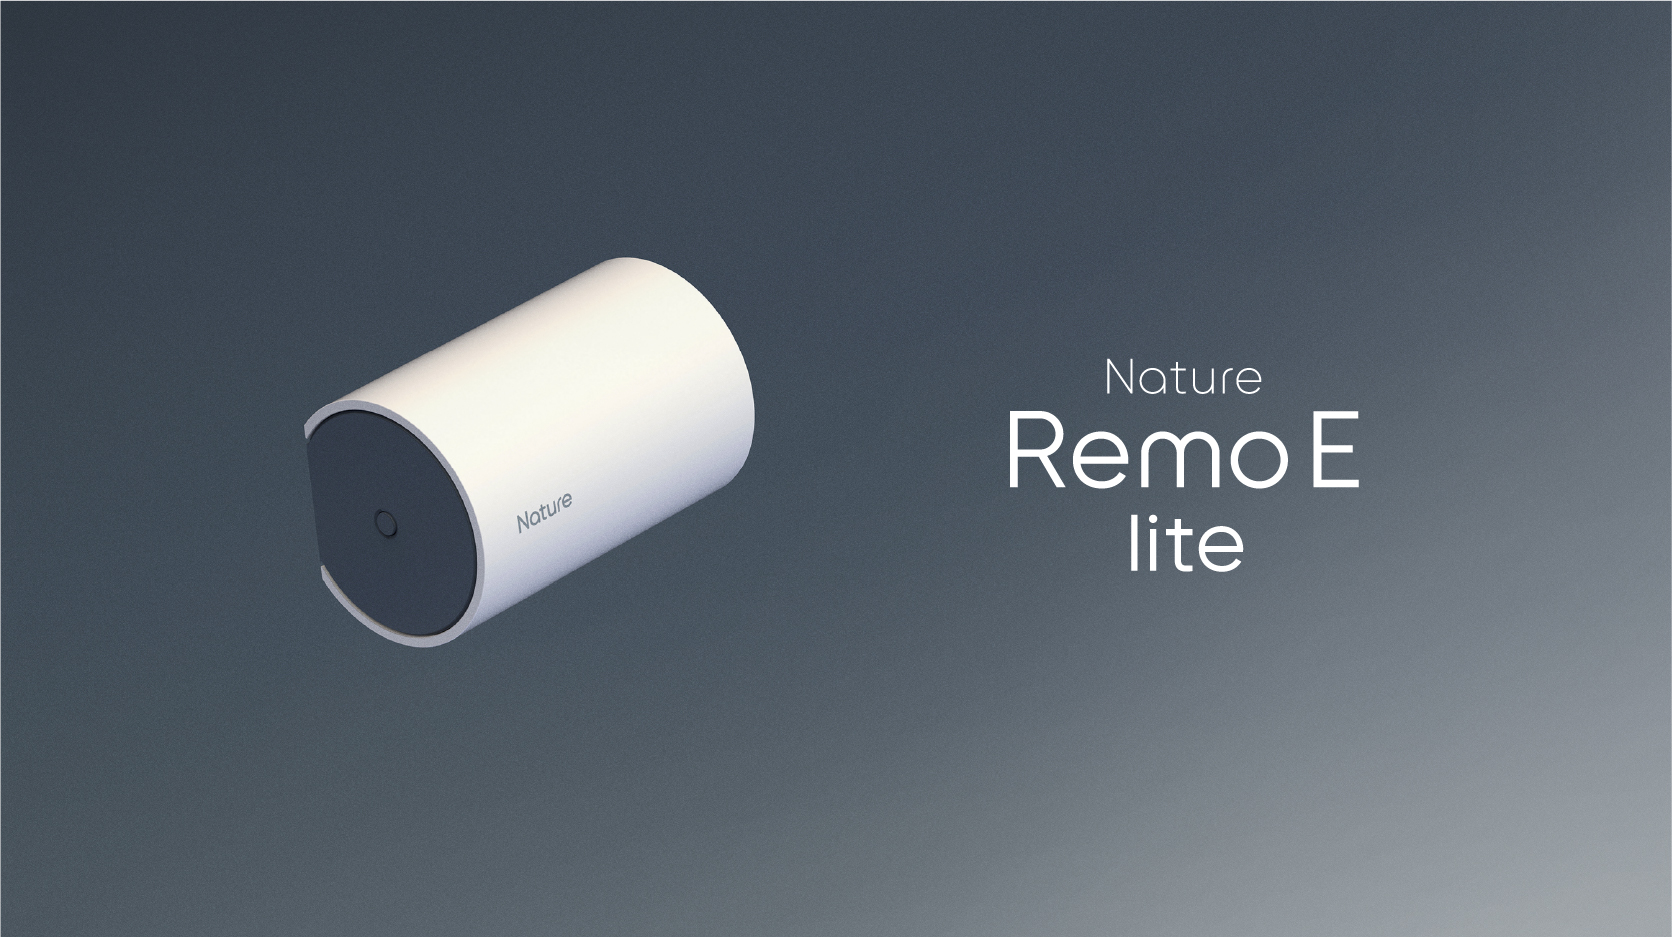 手軽に家庭のエネマネを実現できる「Nature Remo E lite」を本日発売｜Nature株式会社のプレスリリース